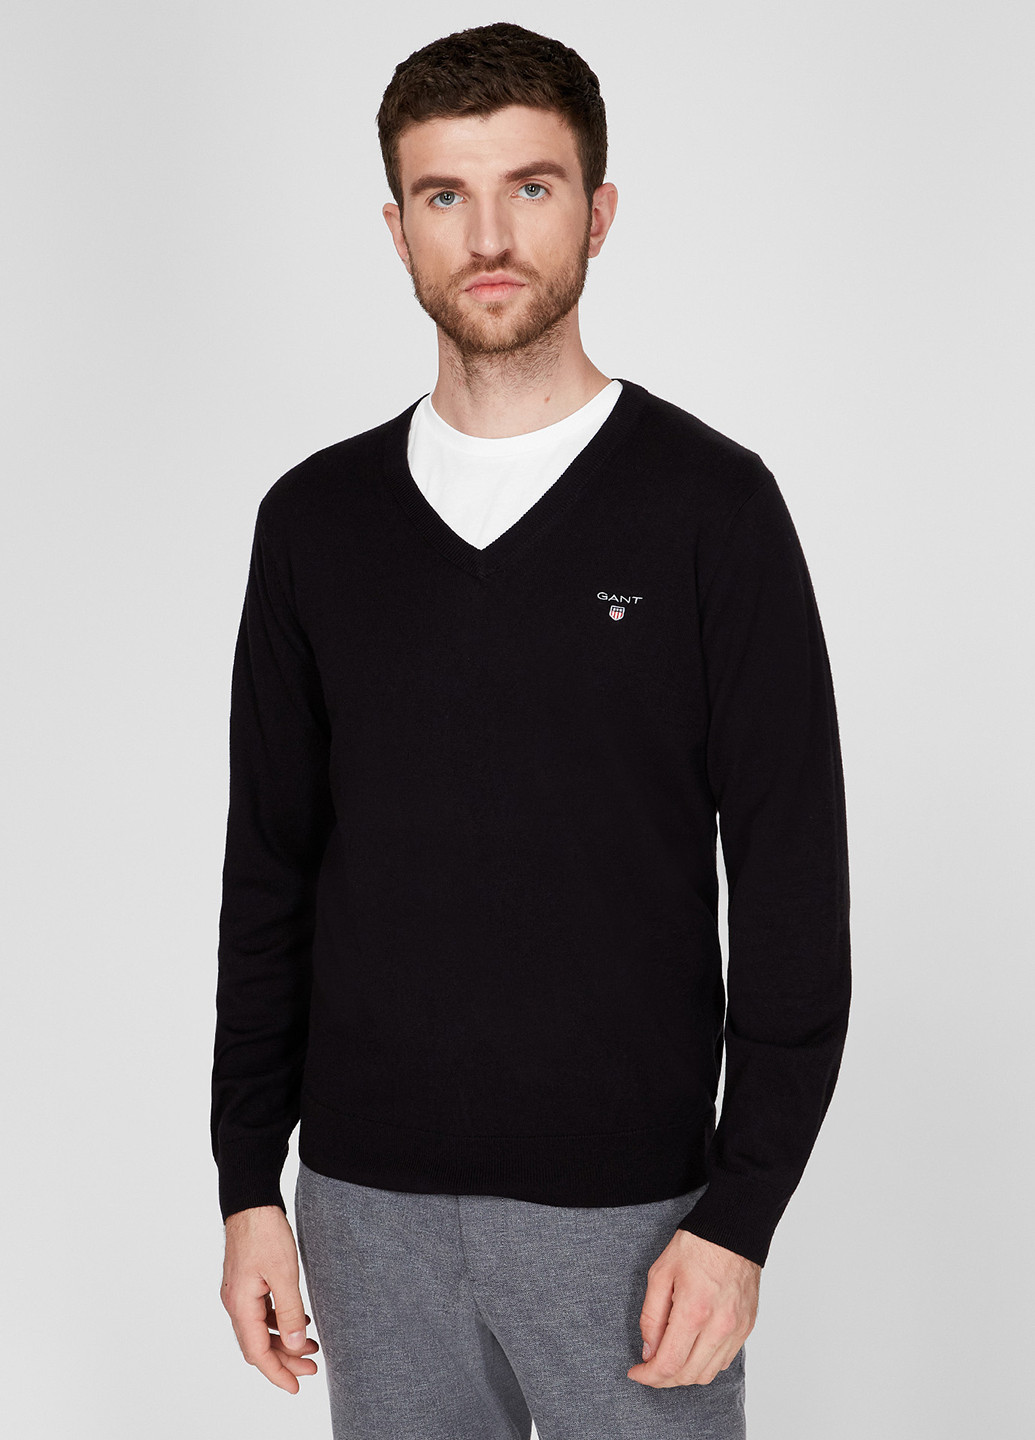 Черный демисезонный пуловер пуловер Gant